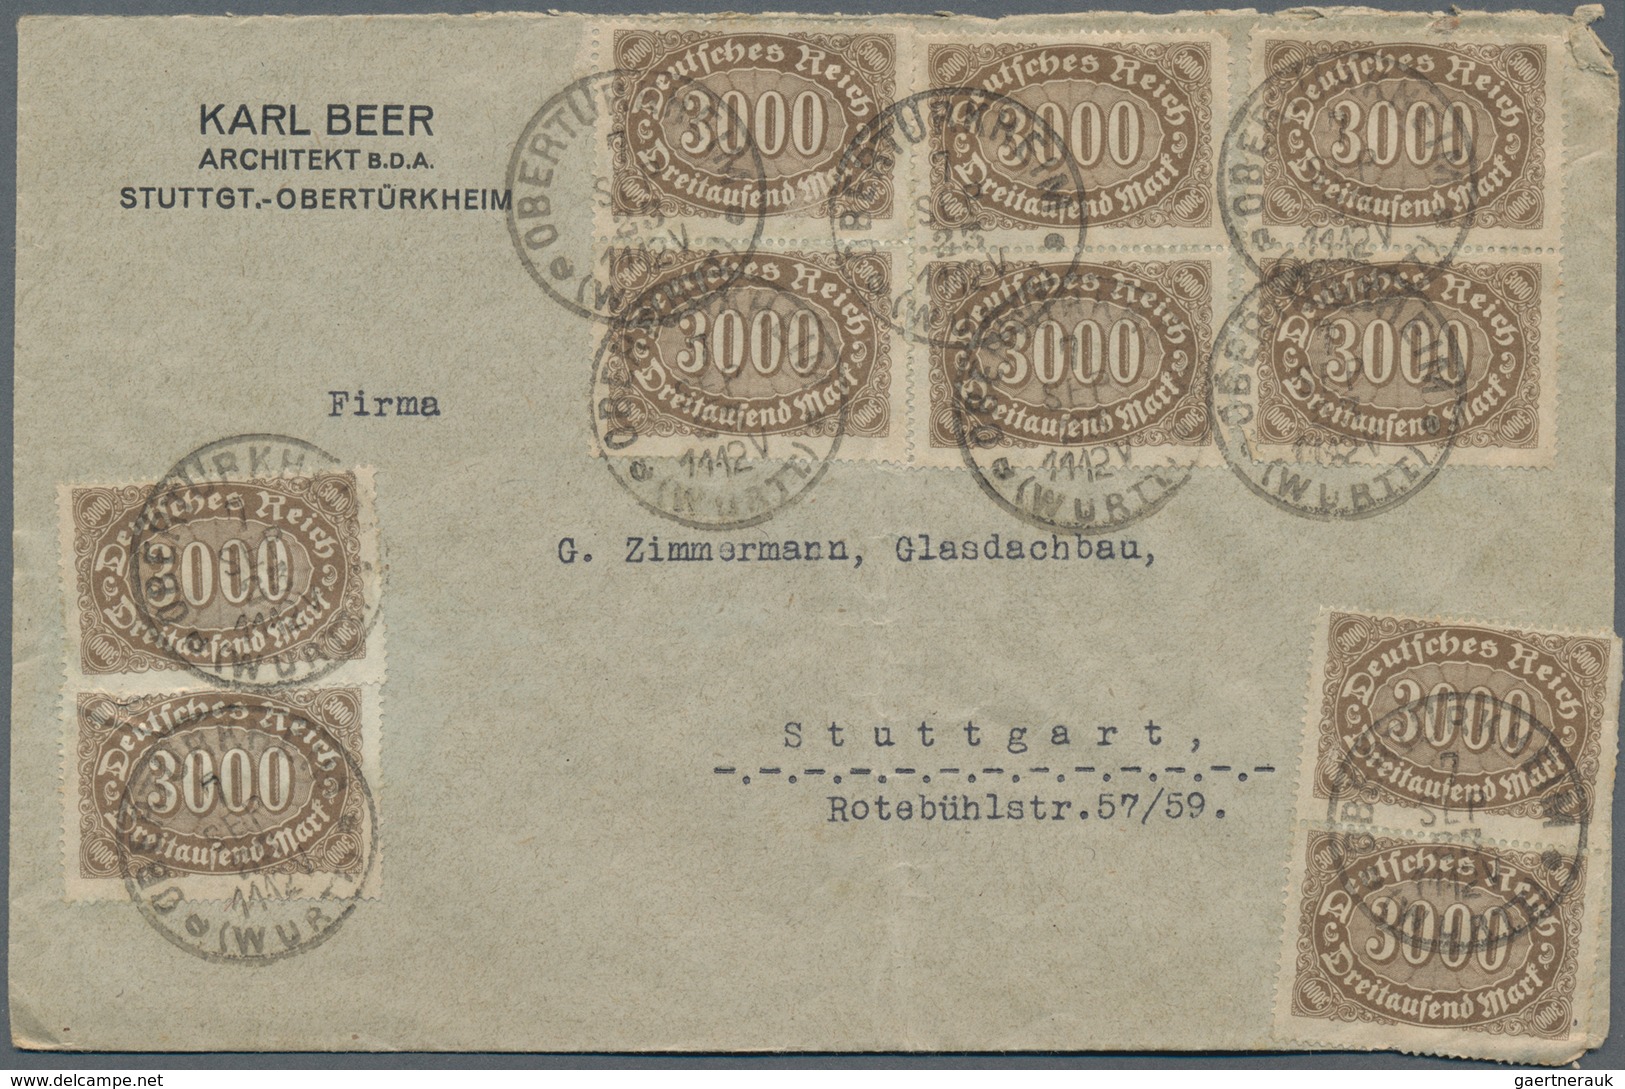 Deutsches Reich - Inflation: 1921/1923, vielseitige Partie von ca. 180 Briefen und Karten, soweit er